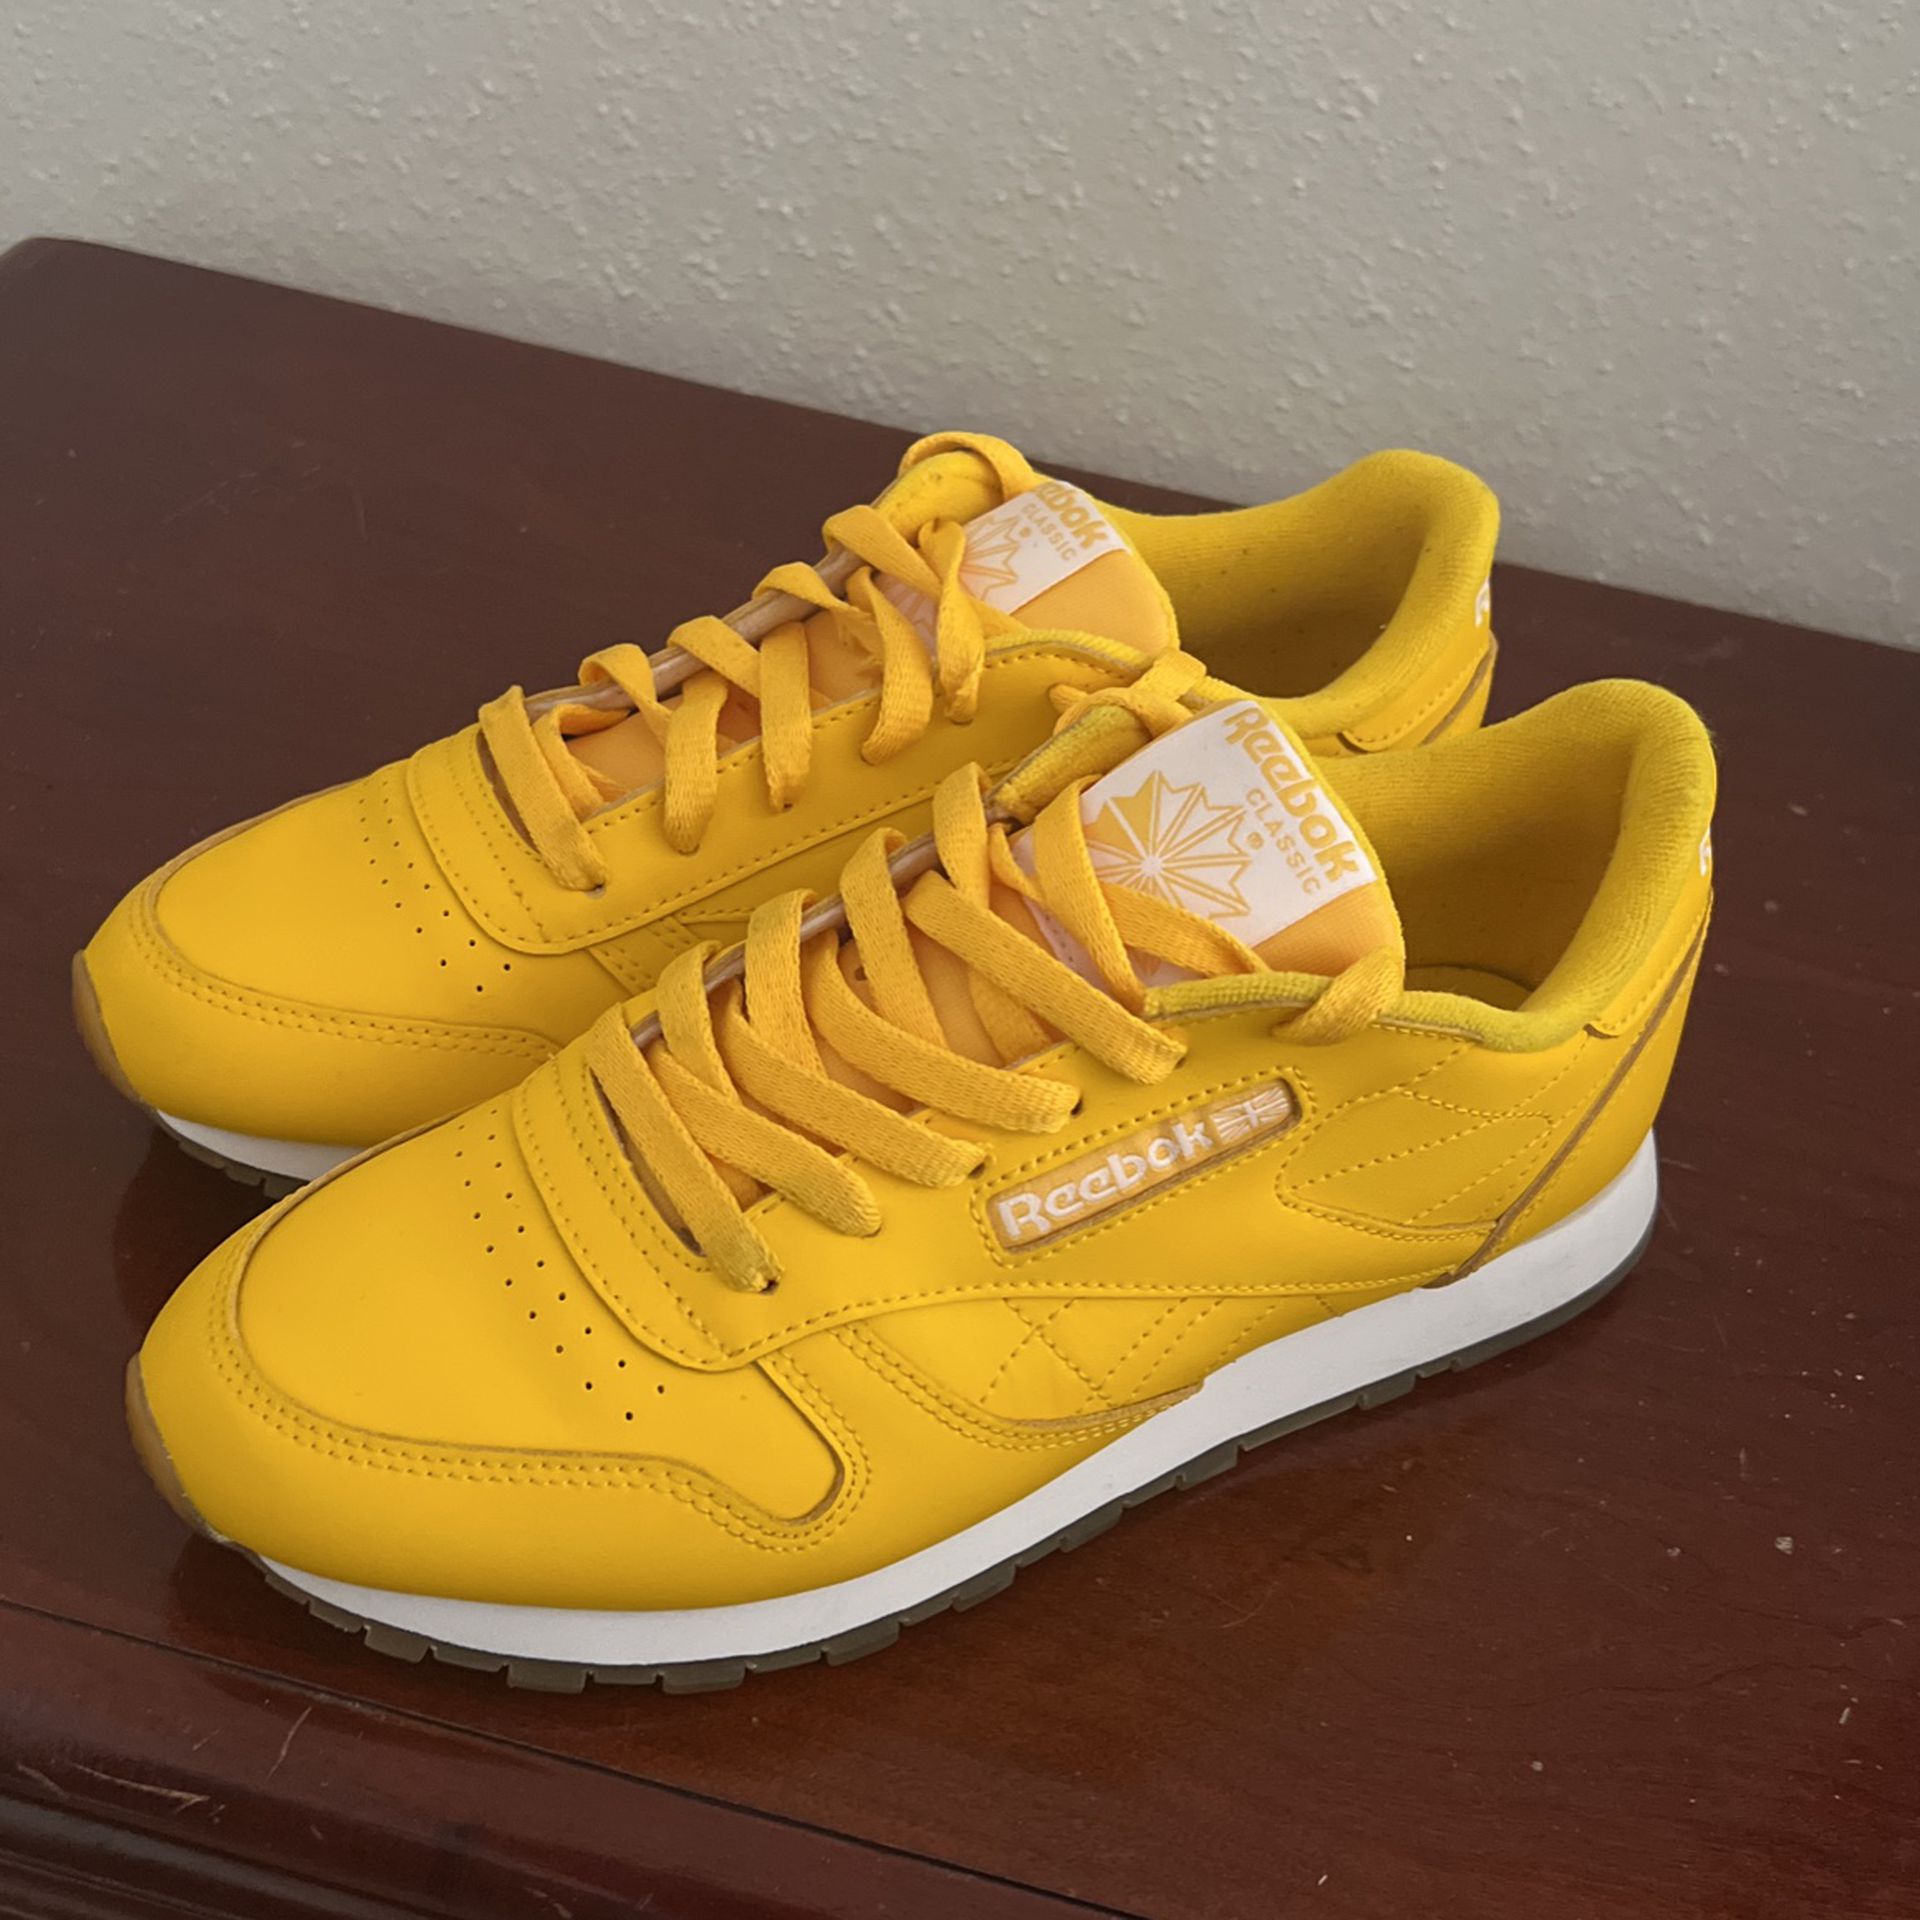 Reebok Yellow Shoes